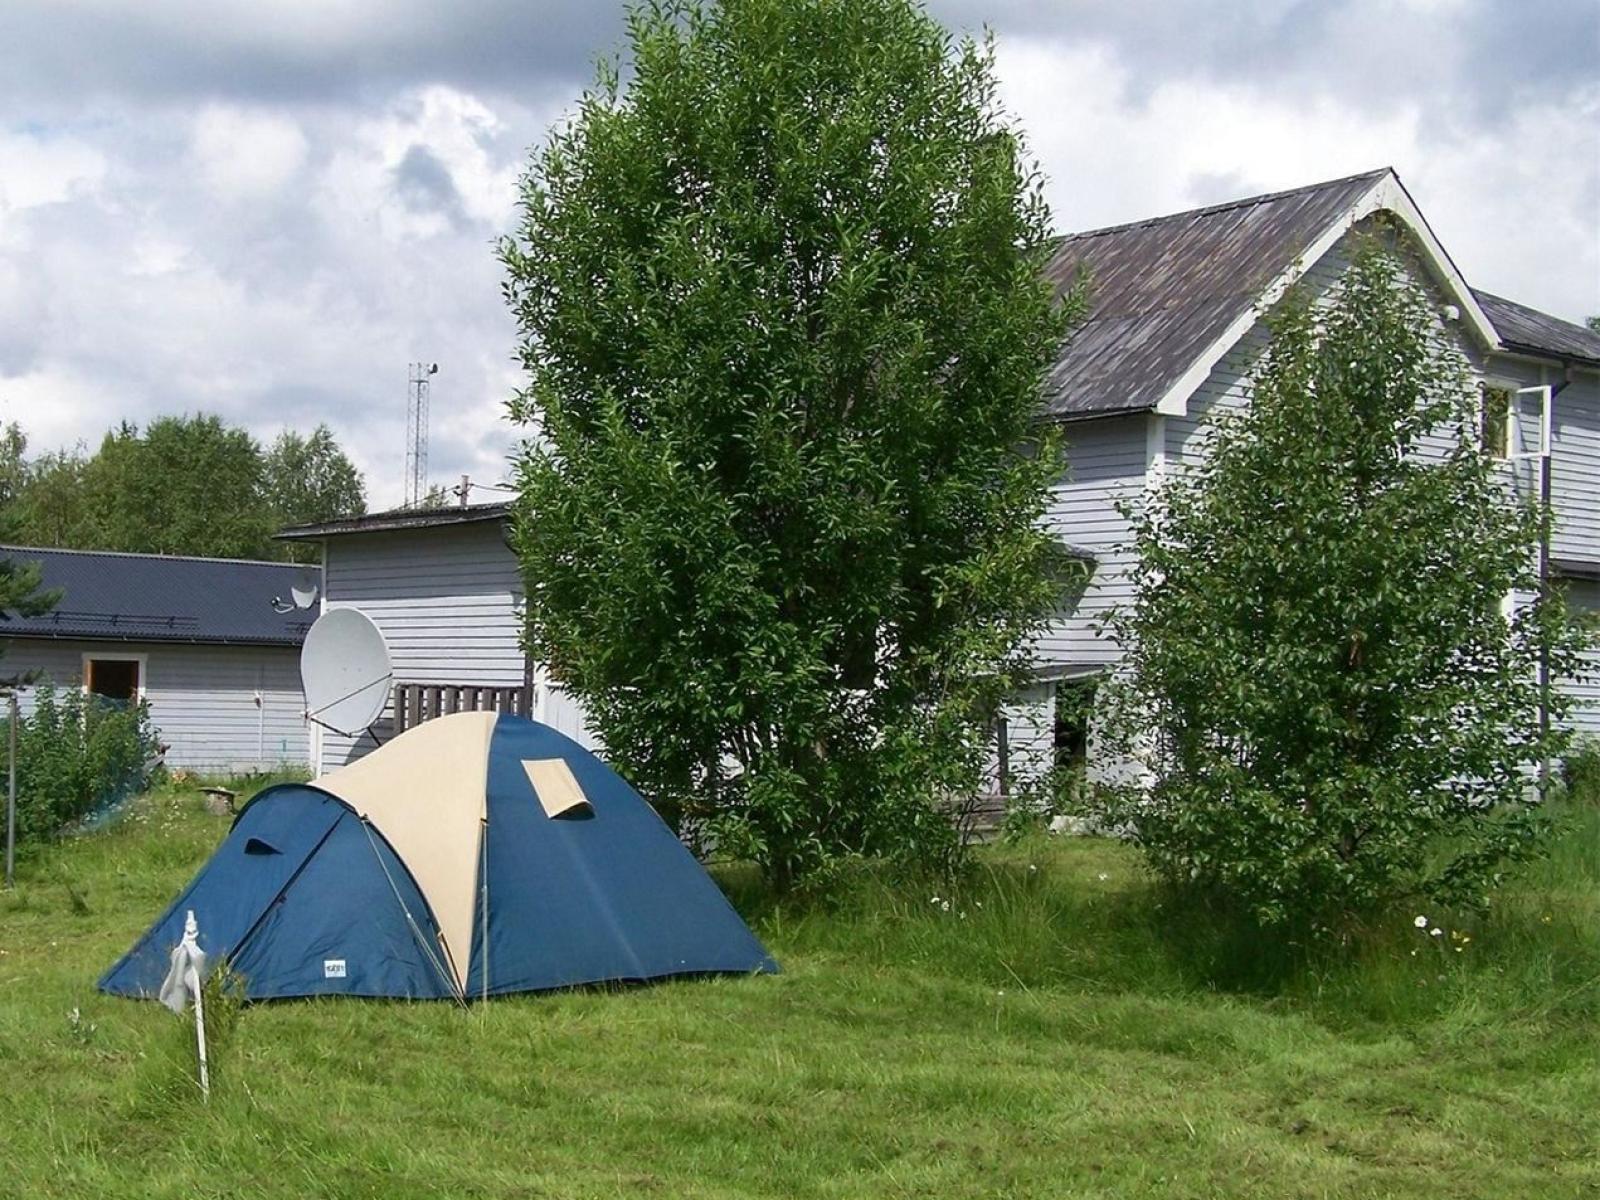 Lillterrsjö Camping